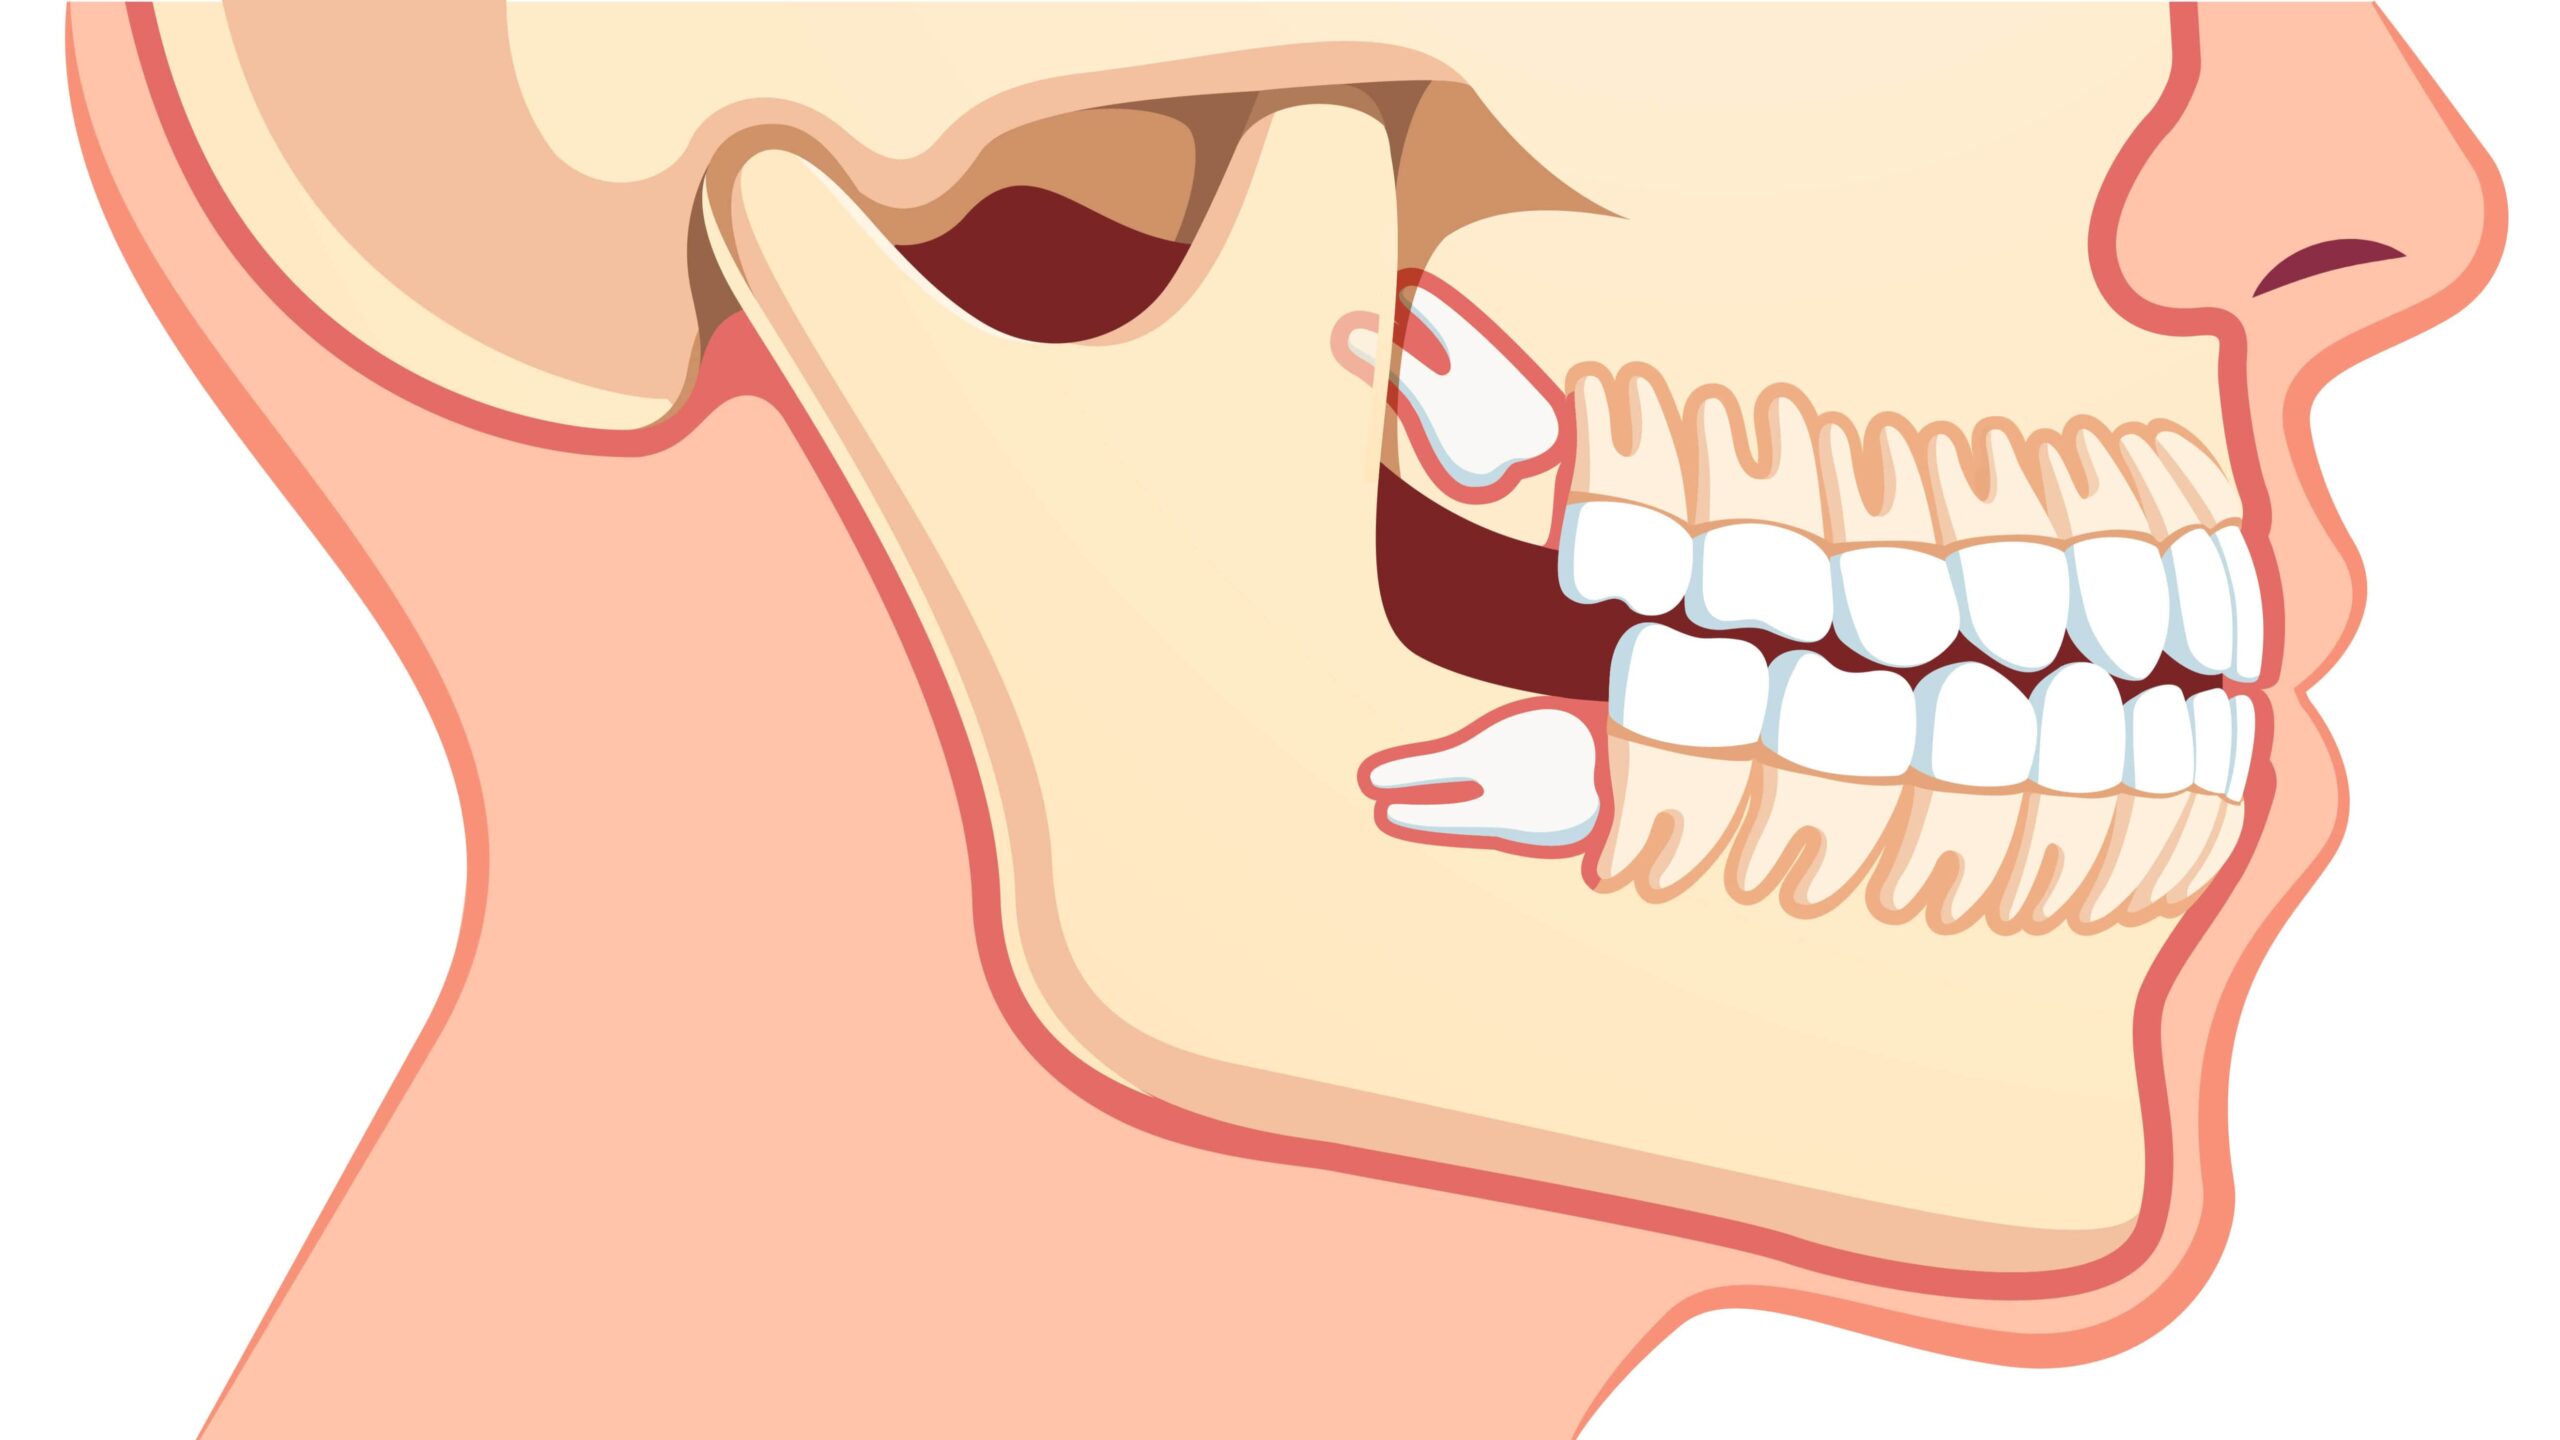 Ząb zatrzymany – jakie są jego objawy i jak go leczyć?